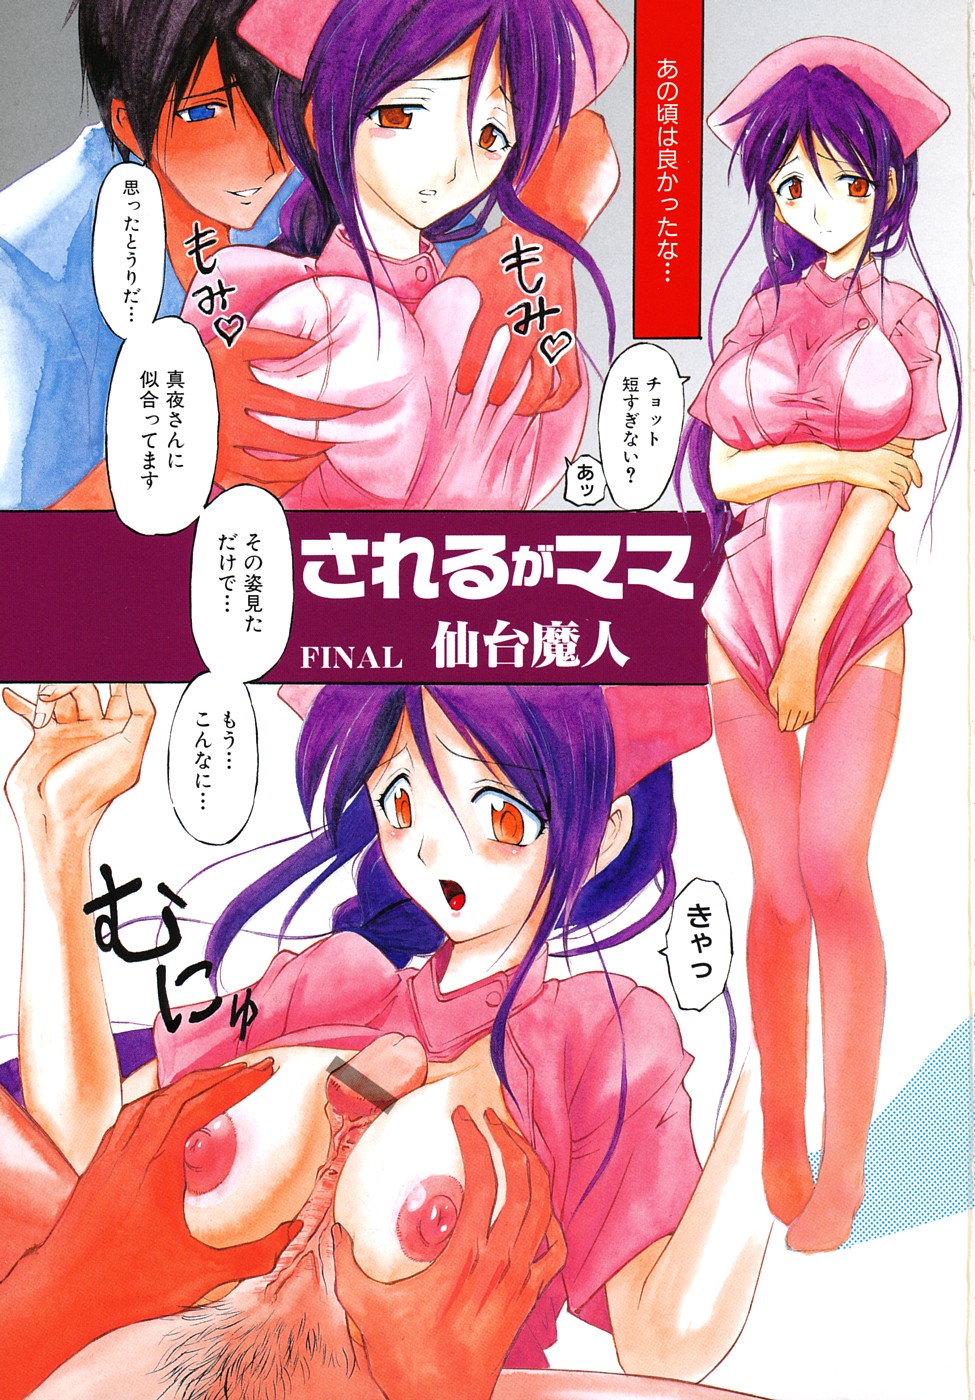 [Anthology] Geki Yaba Anthology Vol. 1 - Naka ni Dashite yo page 4 full